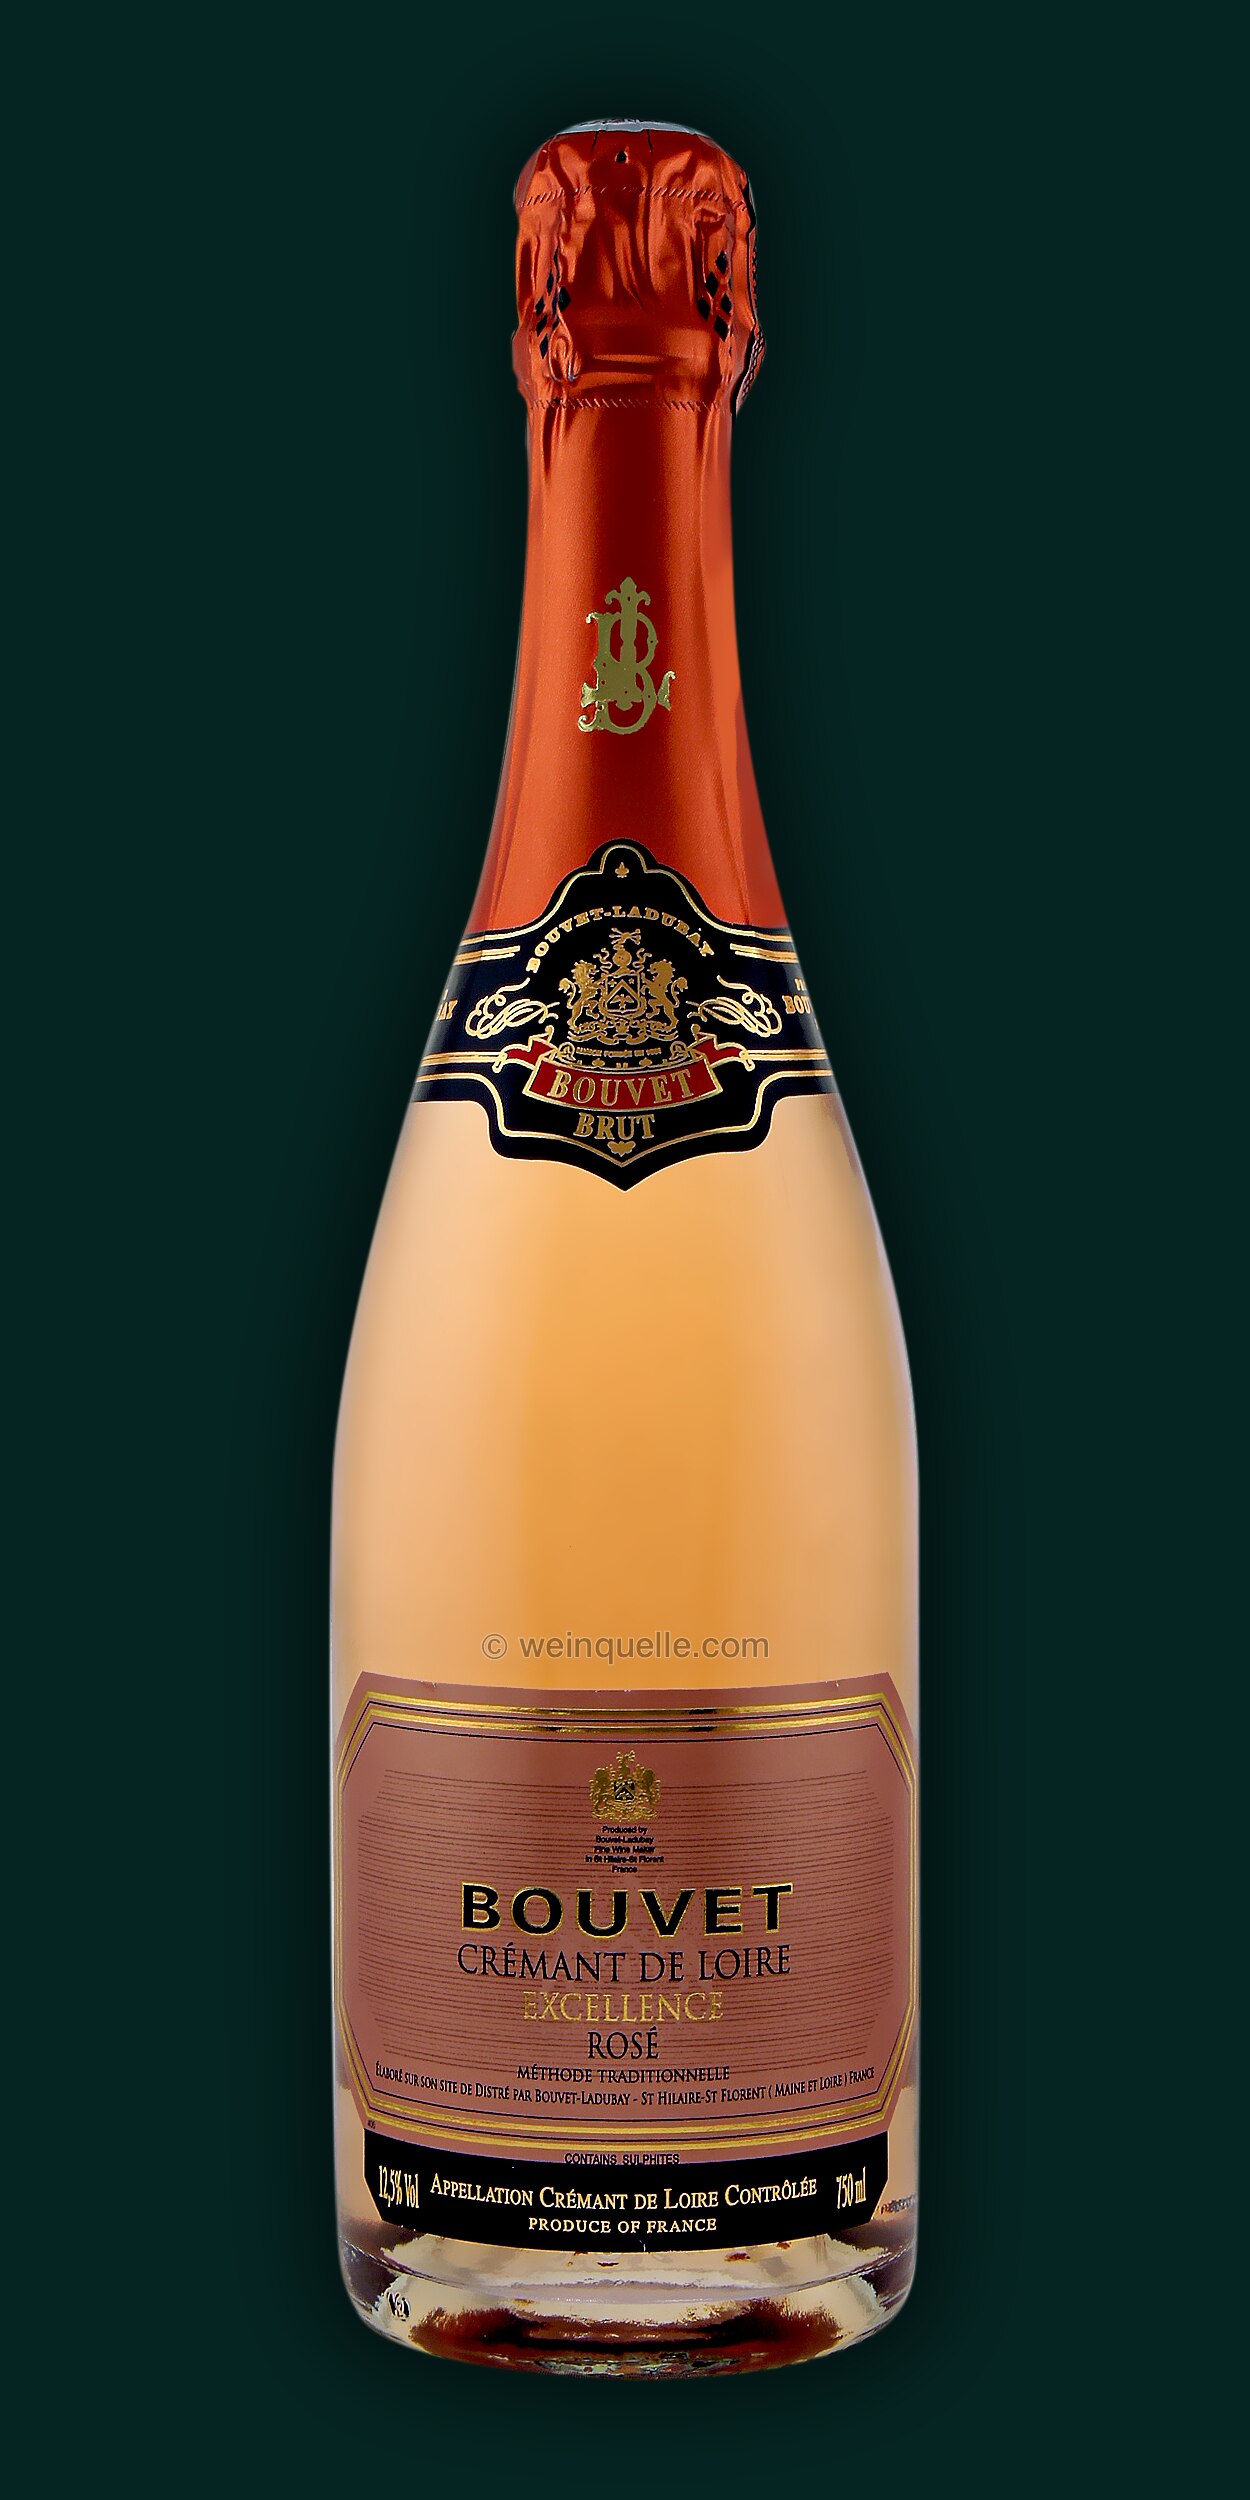 Bouvet Cremant Loire Rosé, Excellence - € de Lühmann 12,95 Weinquelle